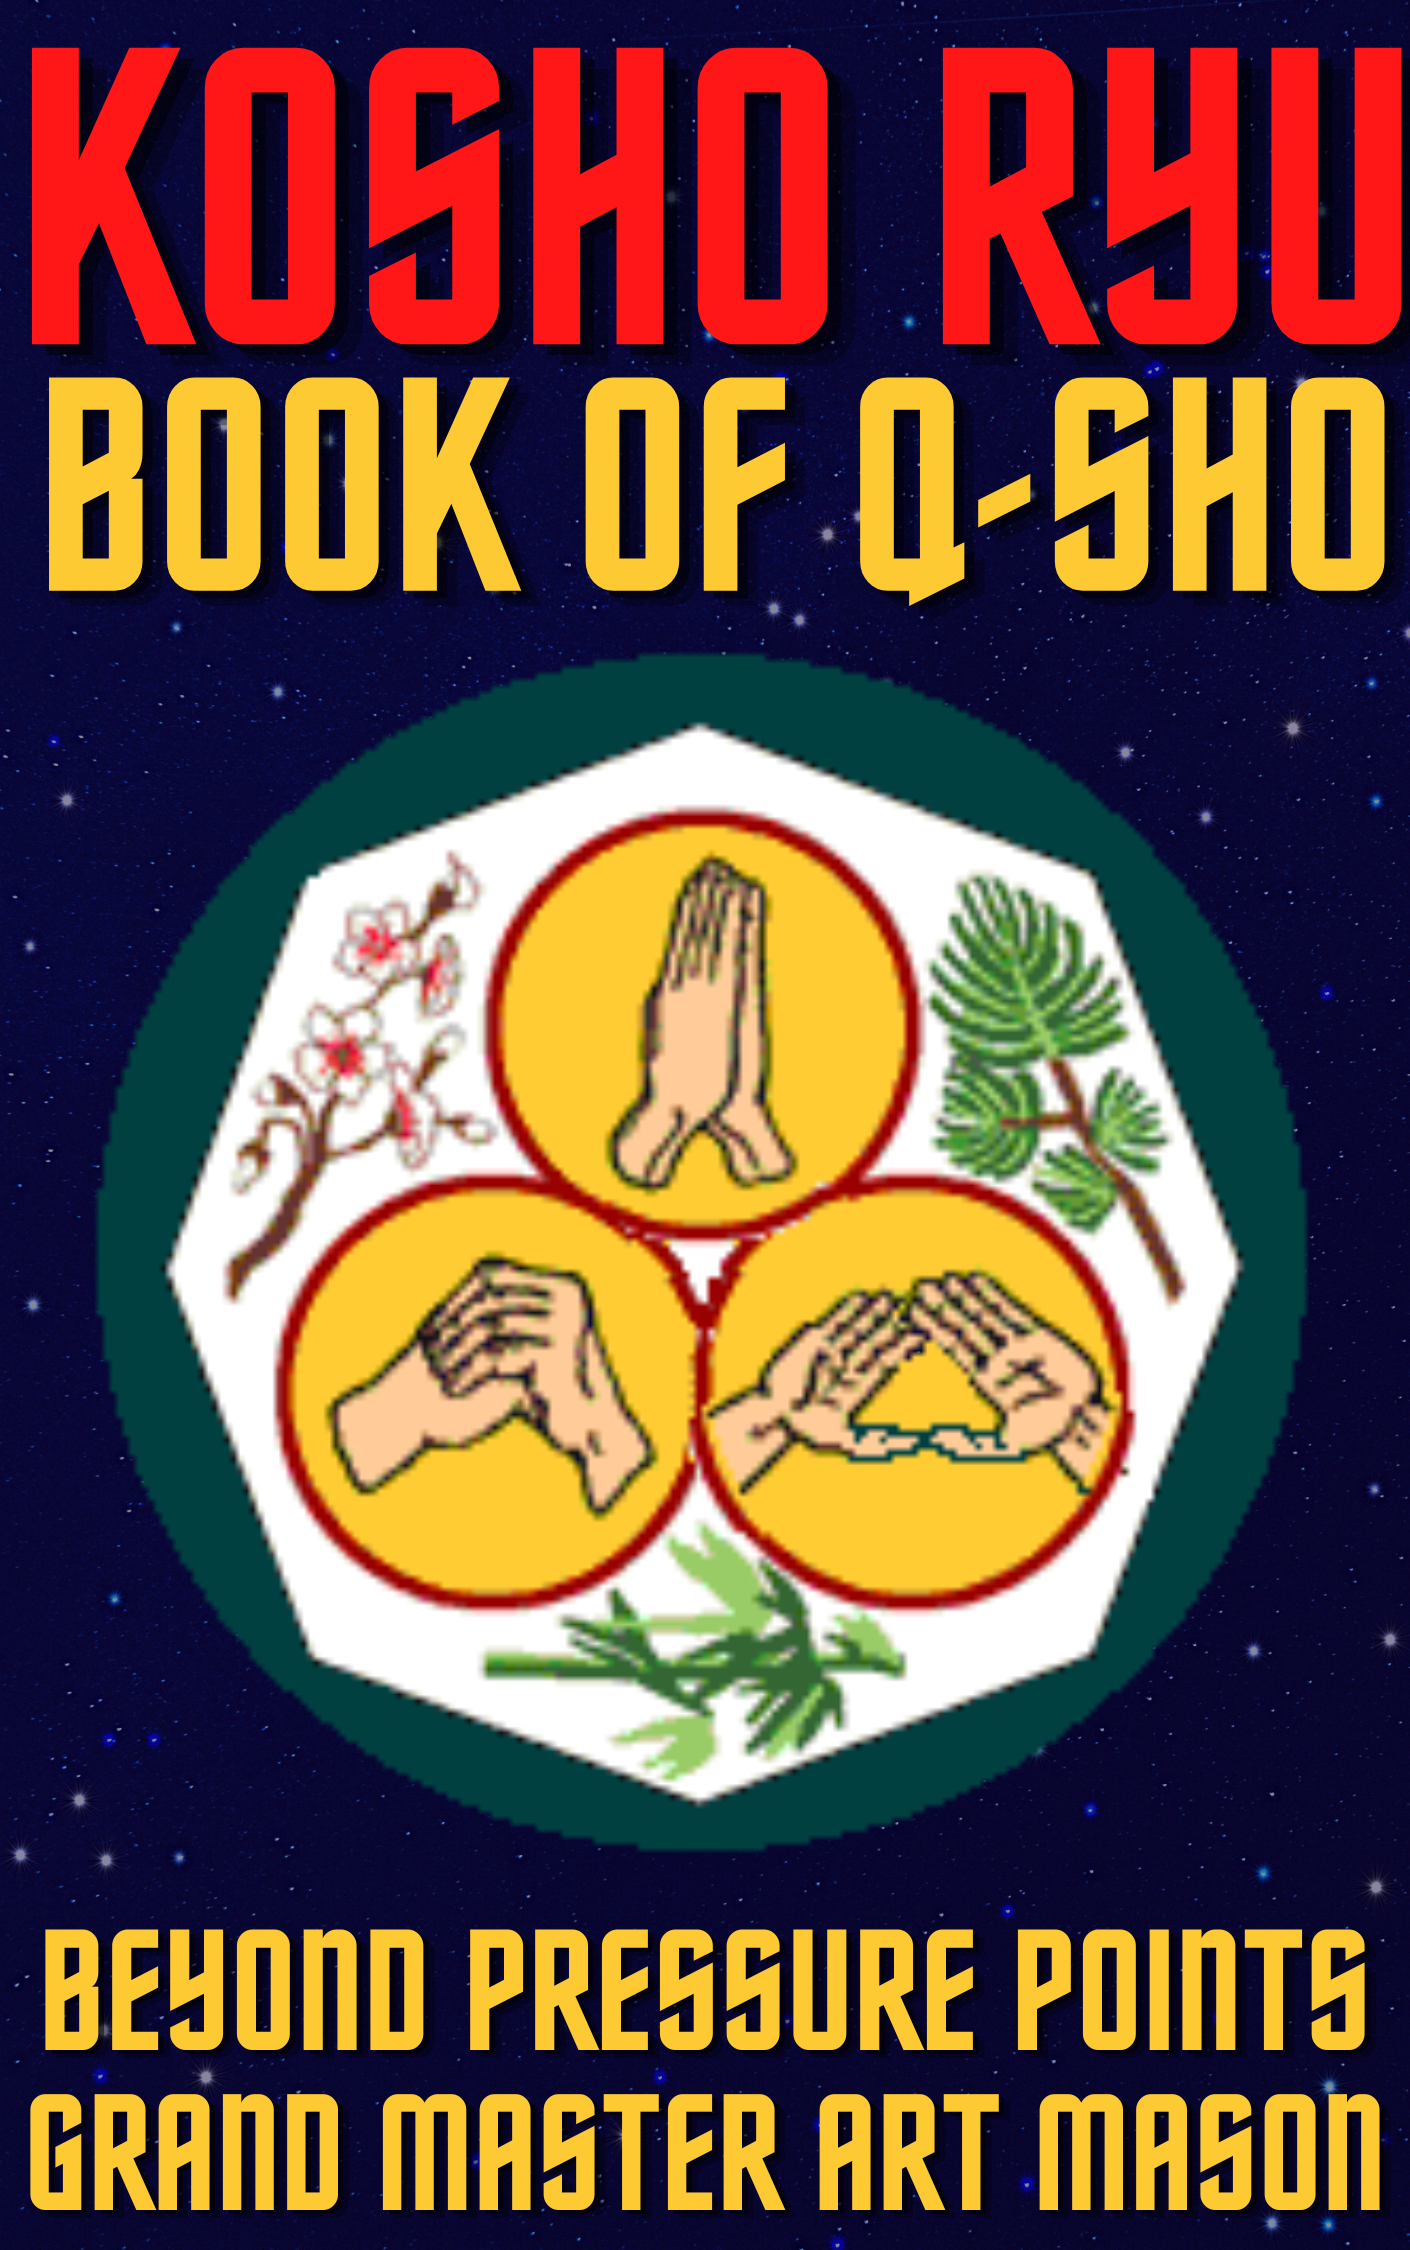 * Kosho Ryu Book of Q-Sho